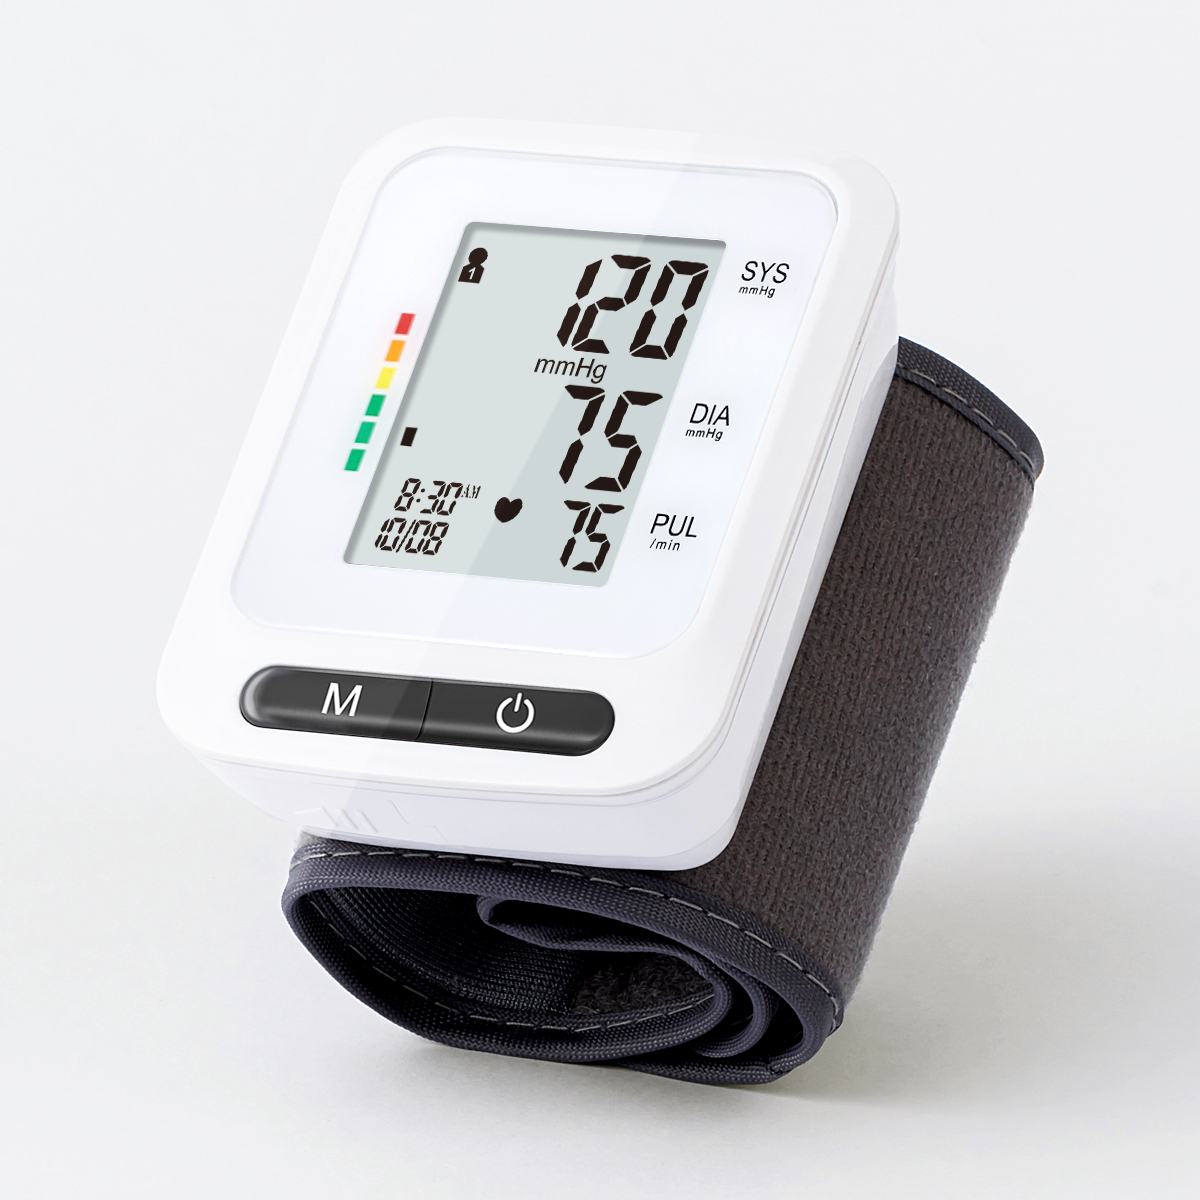 Monitor tekanan getih pigeulang portabel Digital Sphygmomanometer pigeulang tekanan getih Monitor